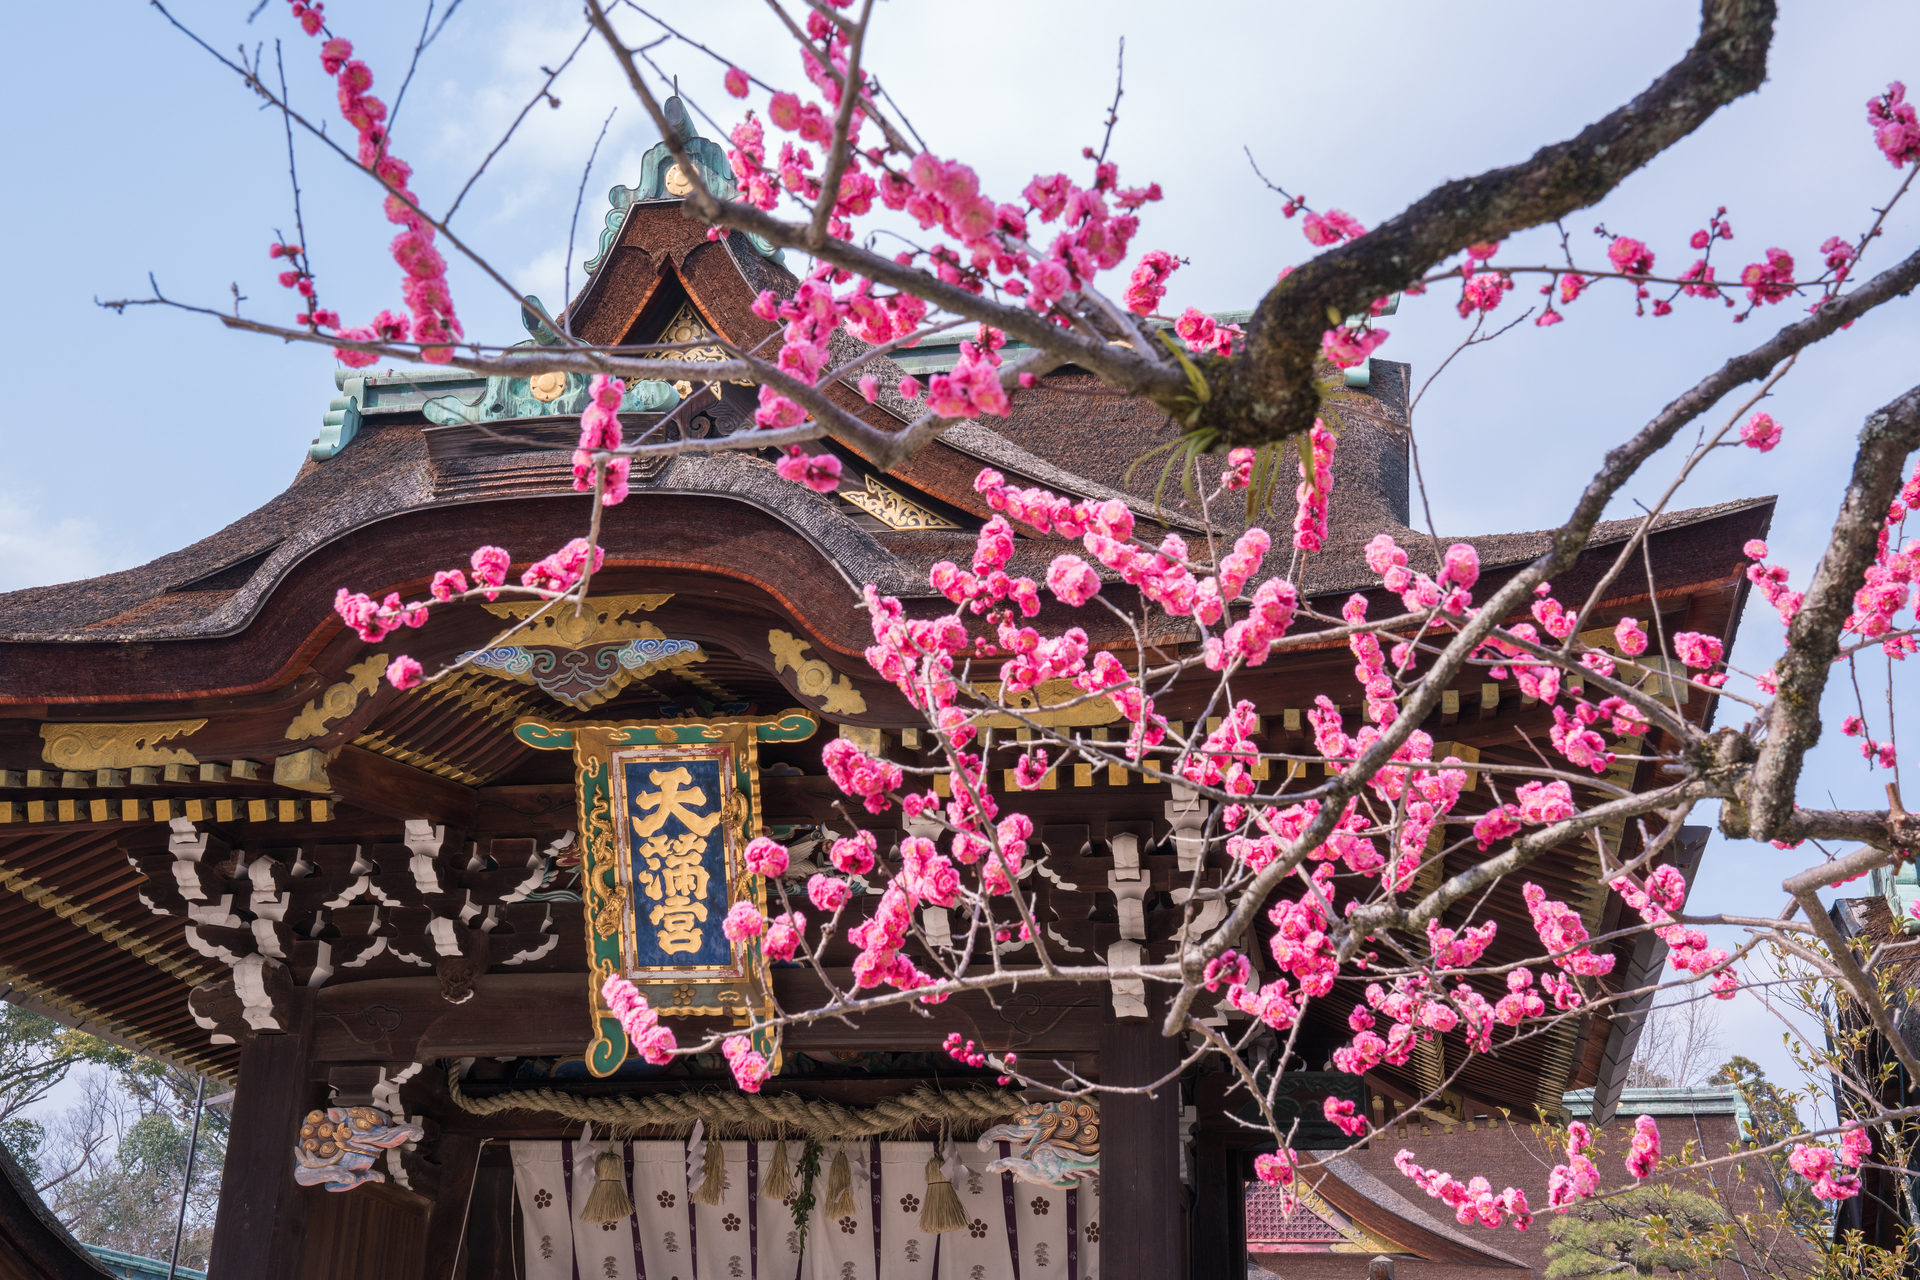 冬の京都でおすすめのスポット グルメをご紹介します Caedekyoto カエデ京都 紅葉と伝統美を引き継ぐバッグ